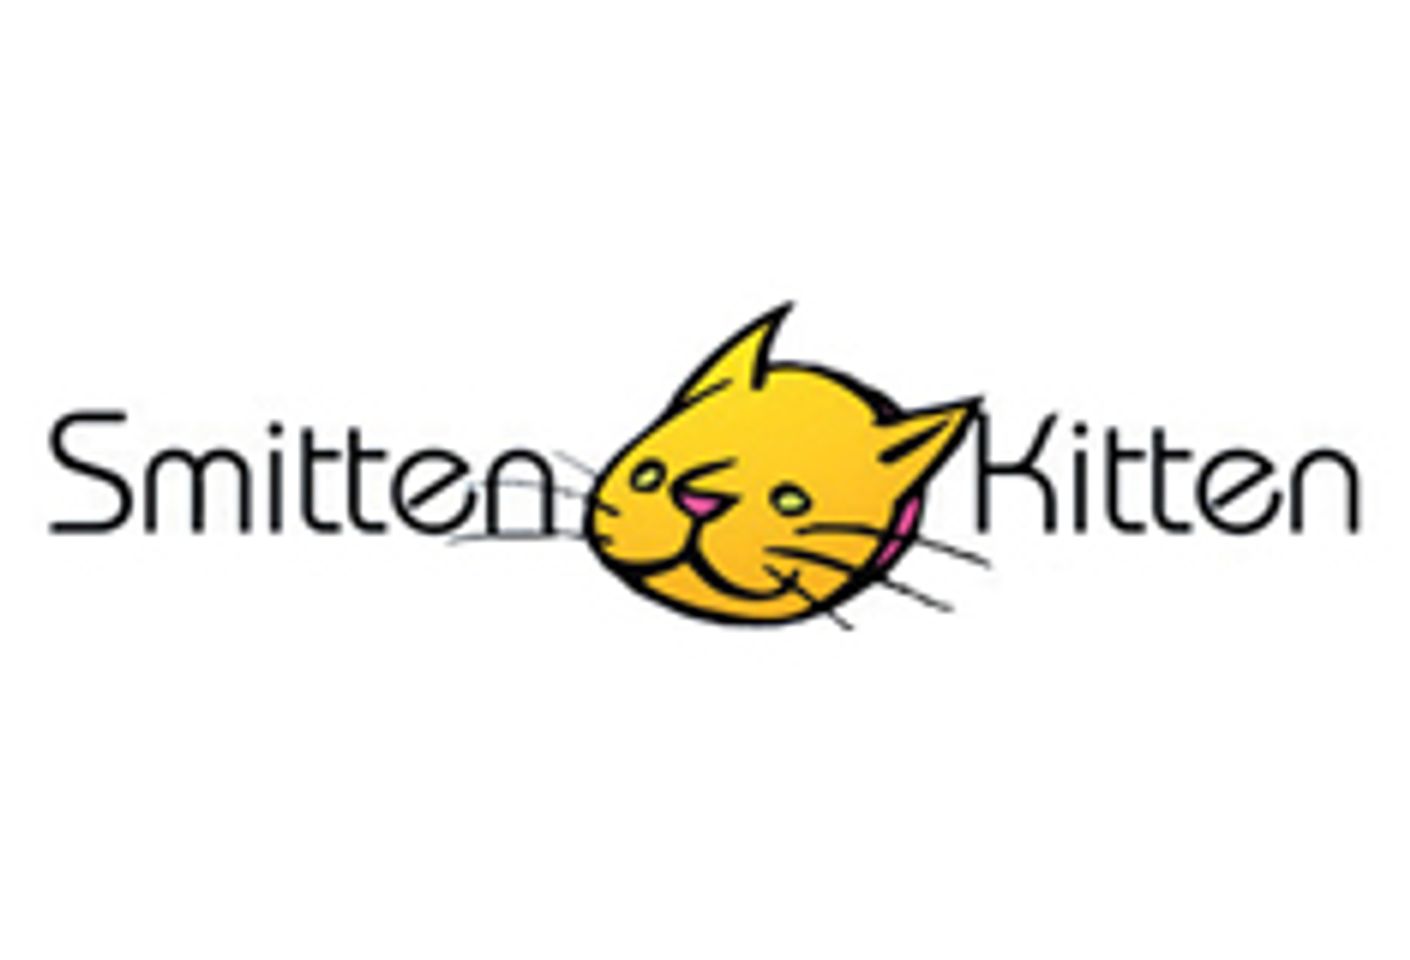 Smitten Kitten Hosting Feminist Porn Event